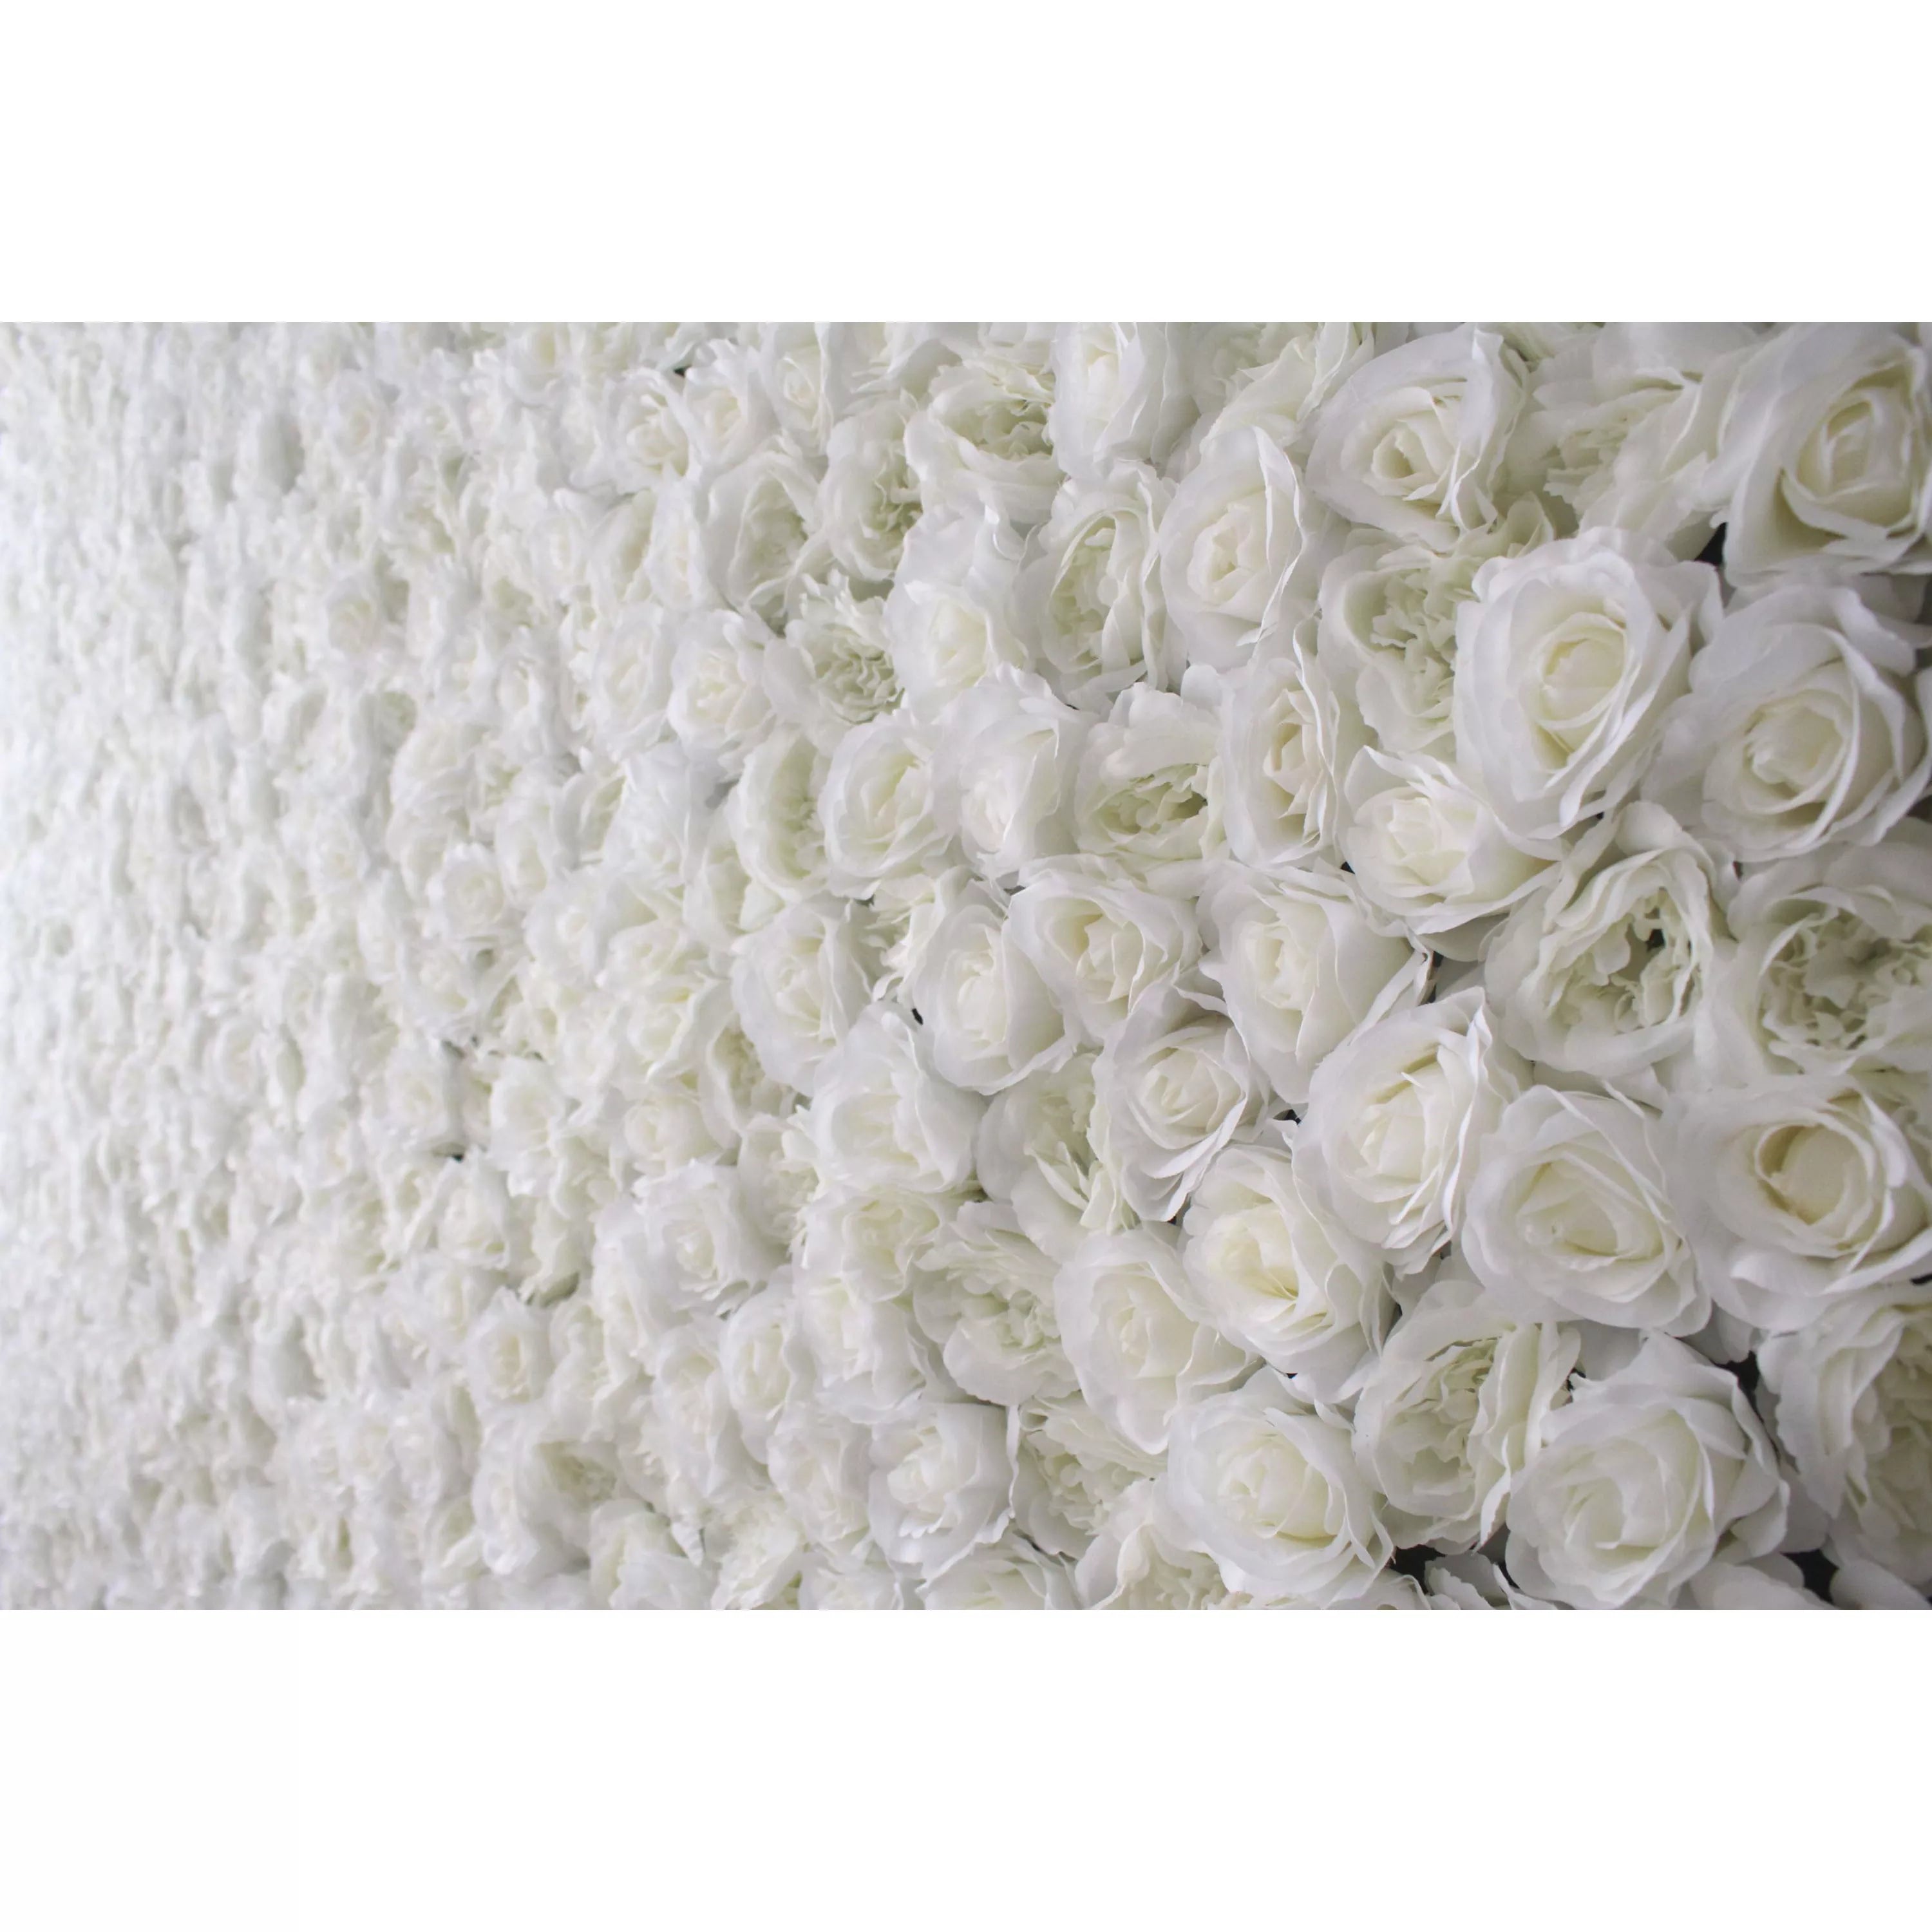 Detail of White Roses